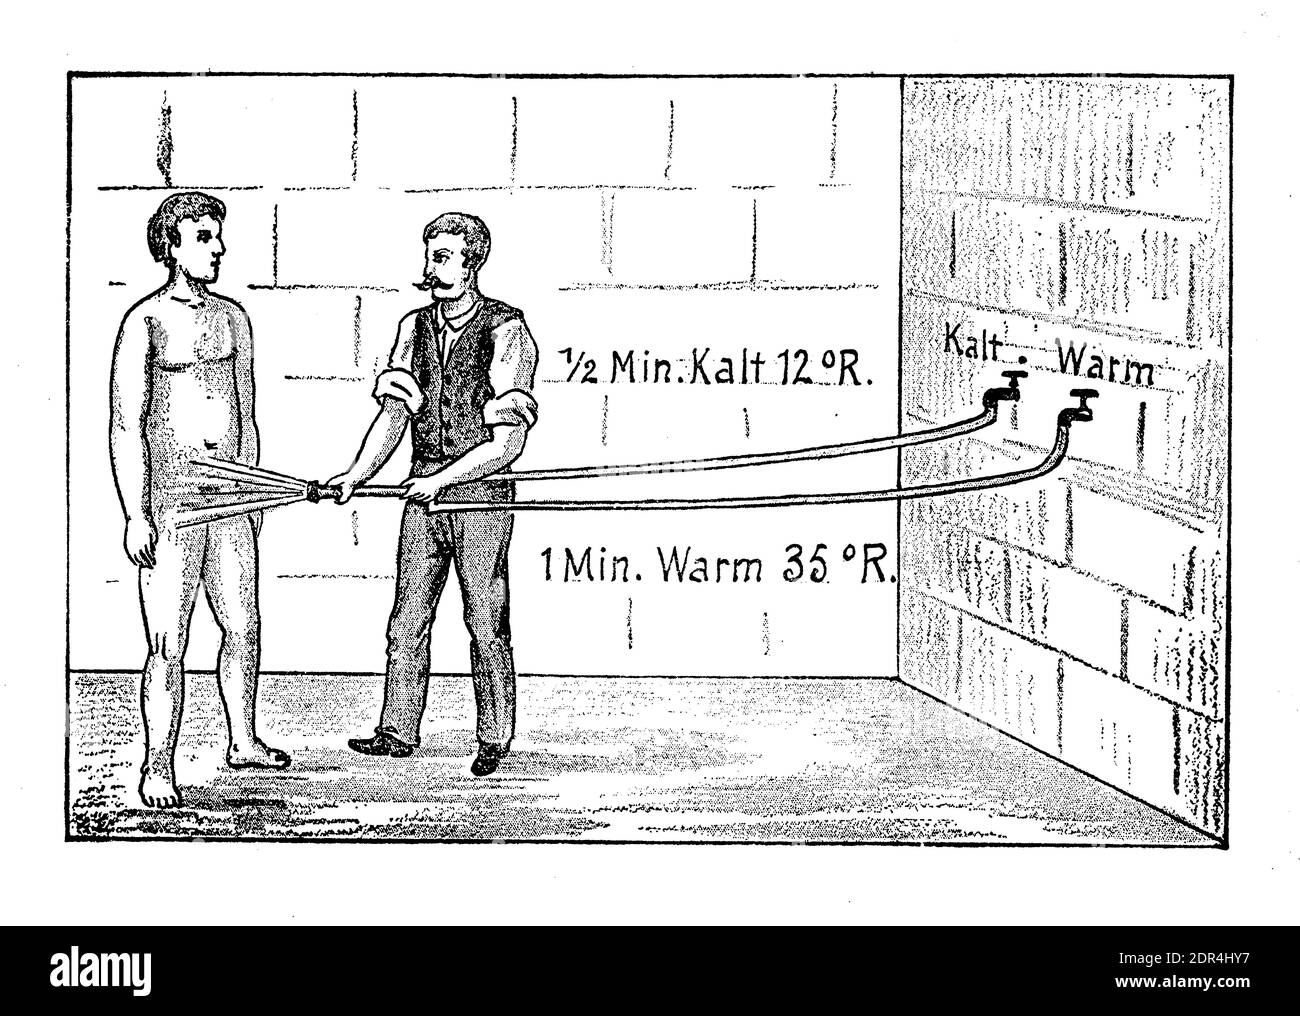 Traitement de douche de contraste: Homme prenant une douche grenouille infirmière, alternant l'eau chaude et froide plusieurs fois, illustration du XIXe siècle Banque D'Images